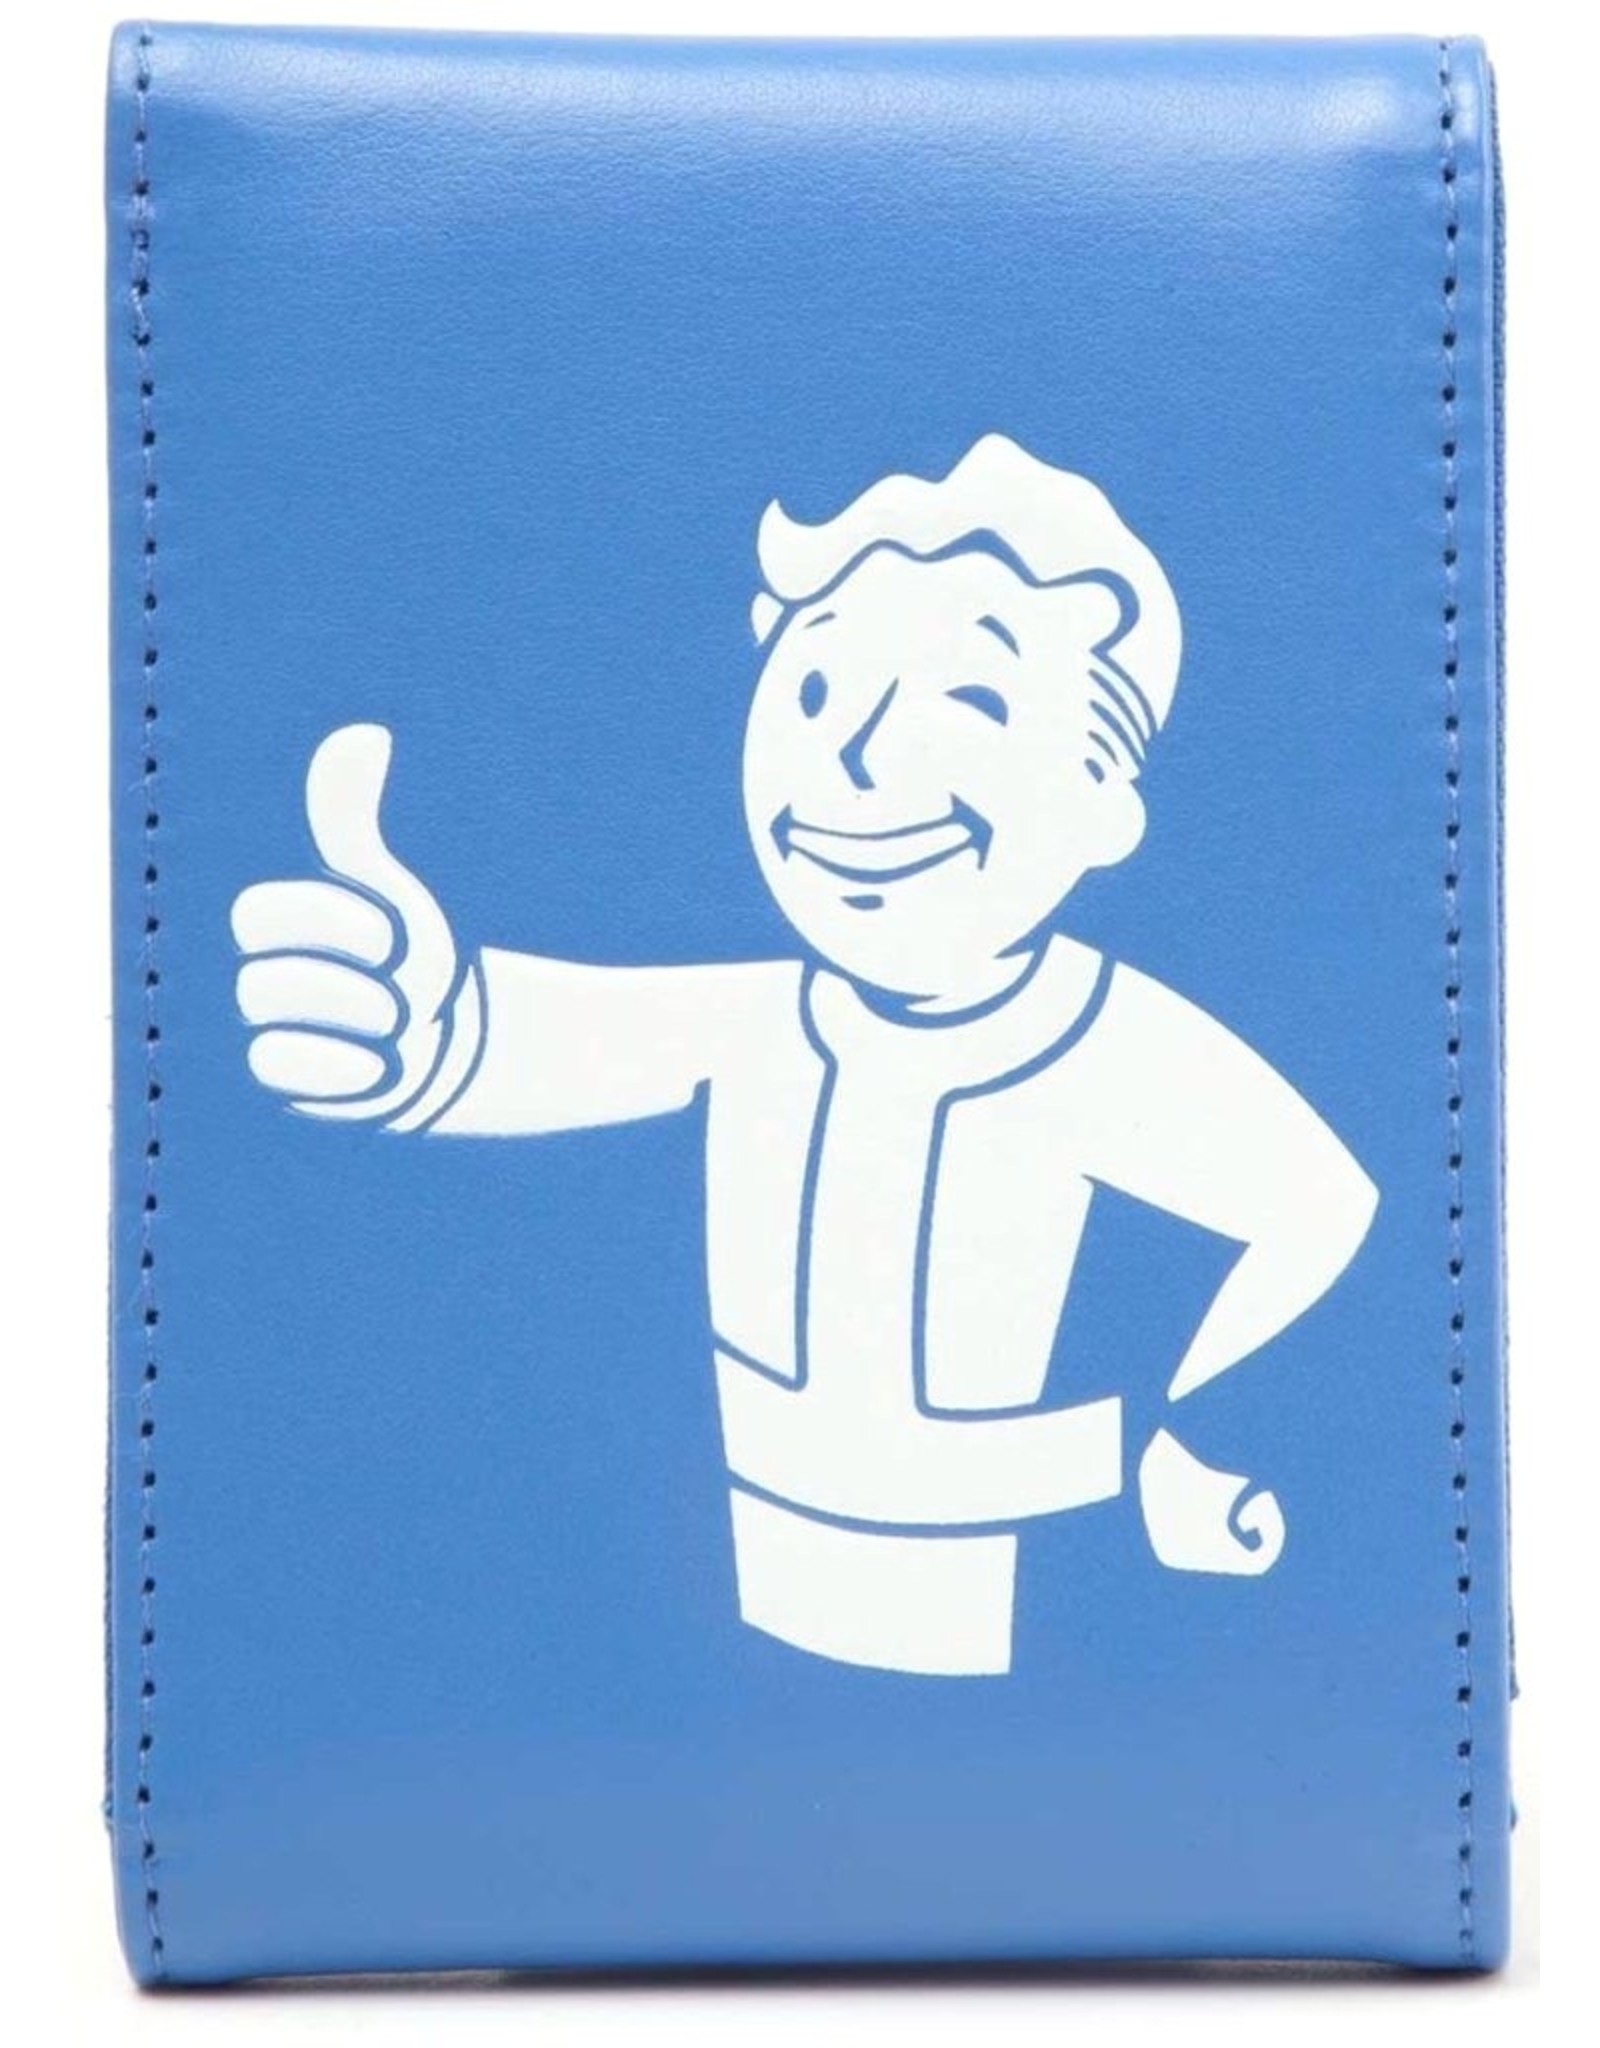 Fall Out Merchandise wallets - Vault Boy merchandise wallet